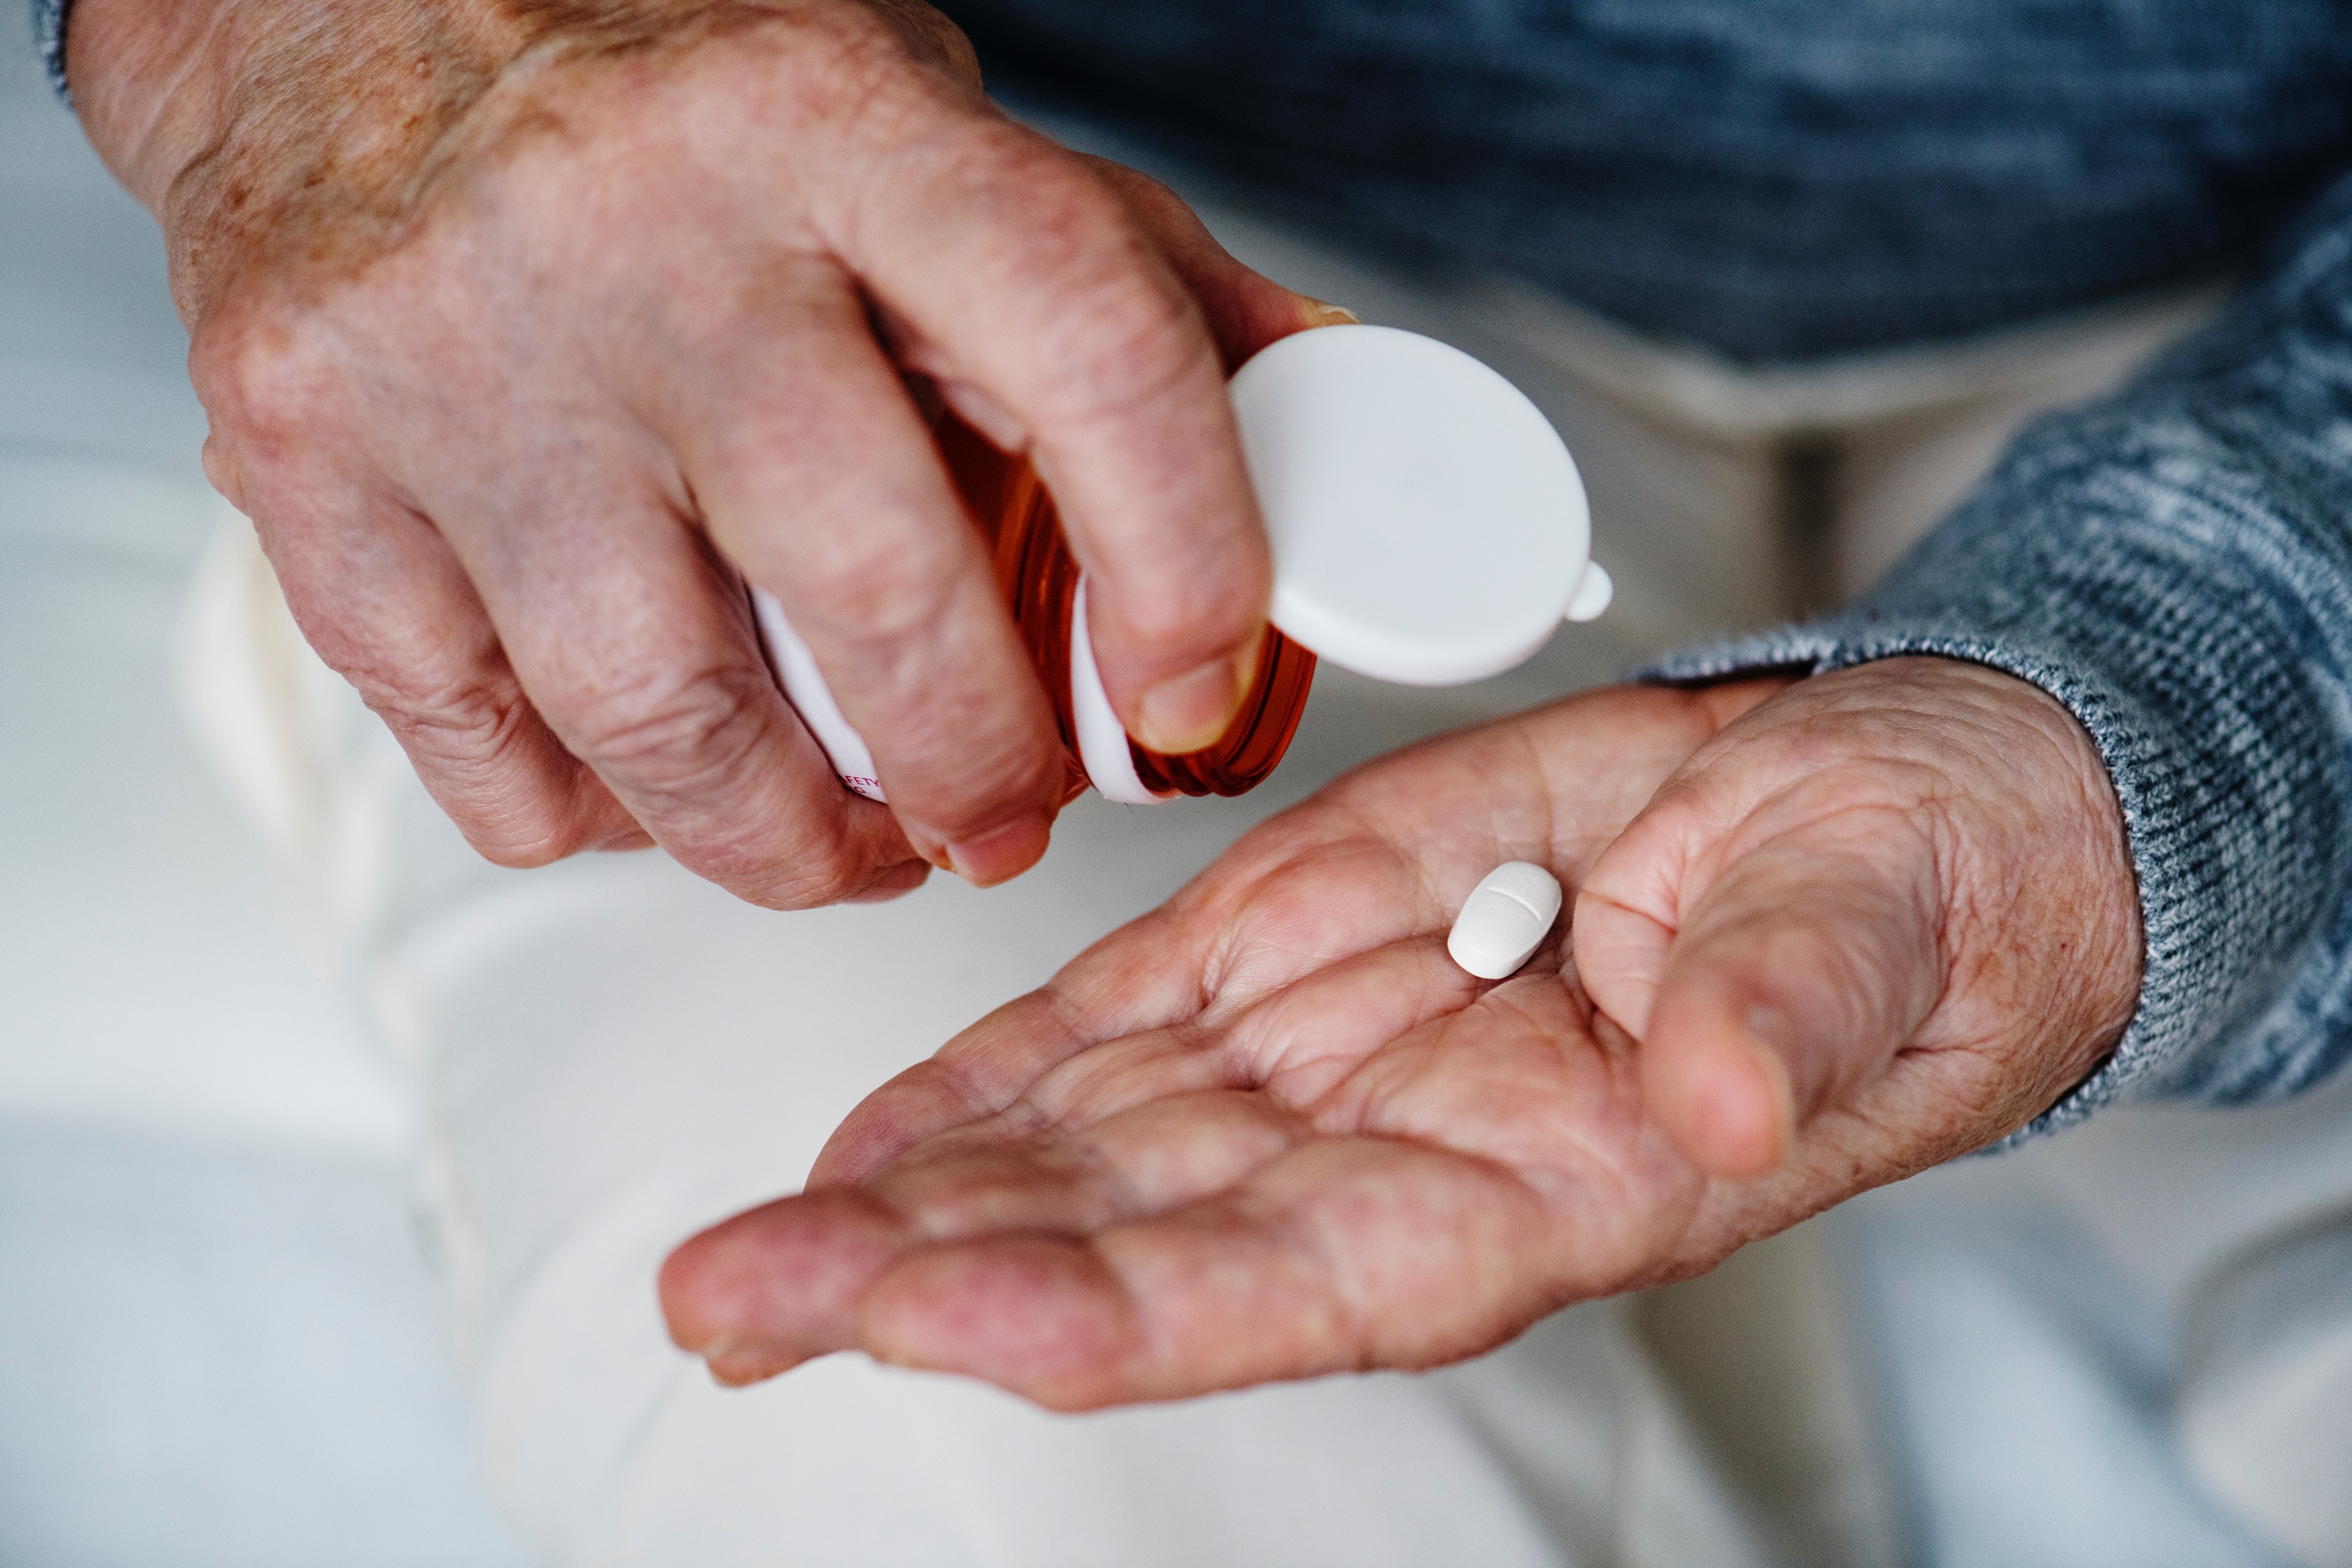 Se estima que 7 de cada 10 personas de más de 60 o 70 años ingieren entre más de 8 o 10 medicamentos / ESPAÑA EUROPA MADRID SALUD
CEDIDA / FUNDACIÓN ECO
